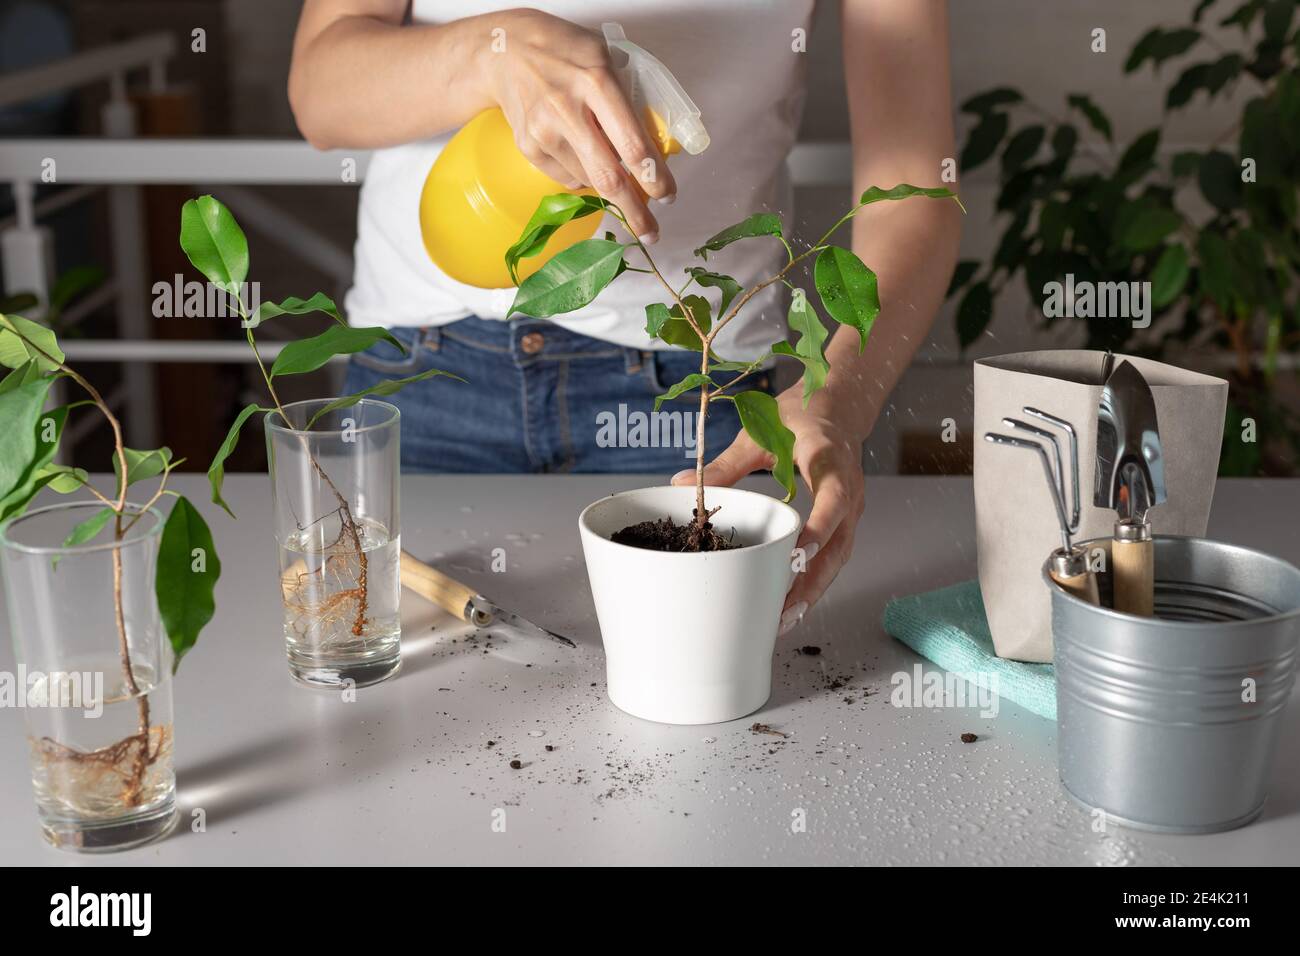 le mani femminili spruzzano la pianta domestica con acqua pulita Foto Stock